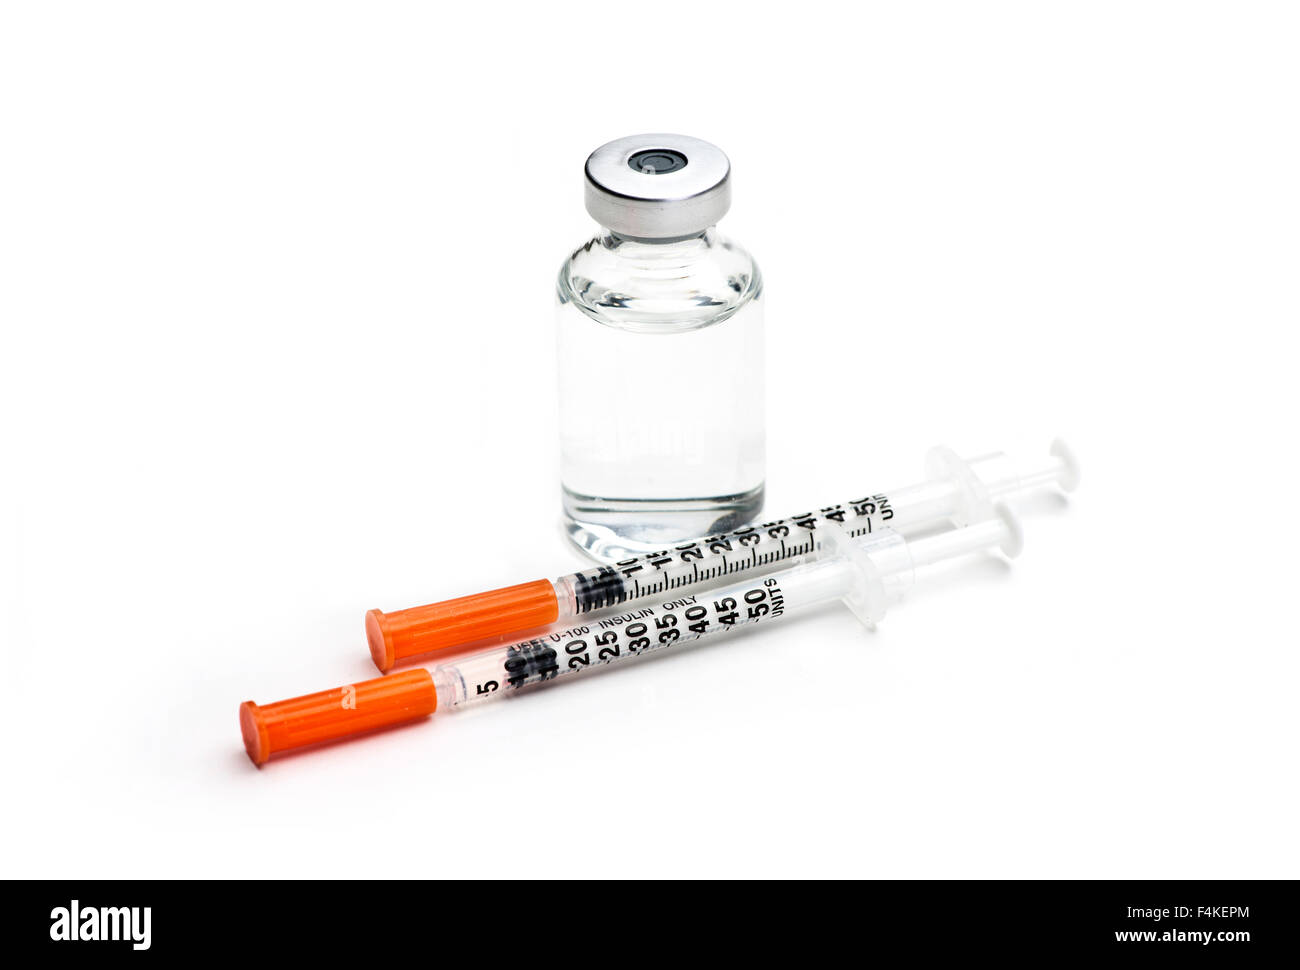 Siringhe da insulina e insulina bottiglia su sfondo bianco. Foto Stock